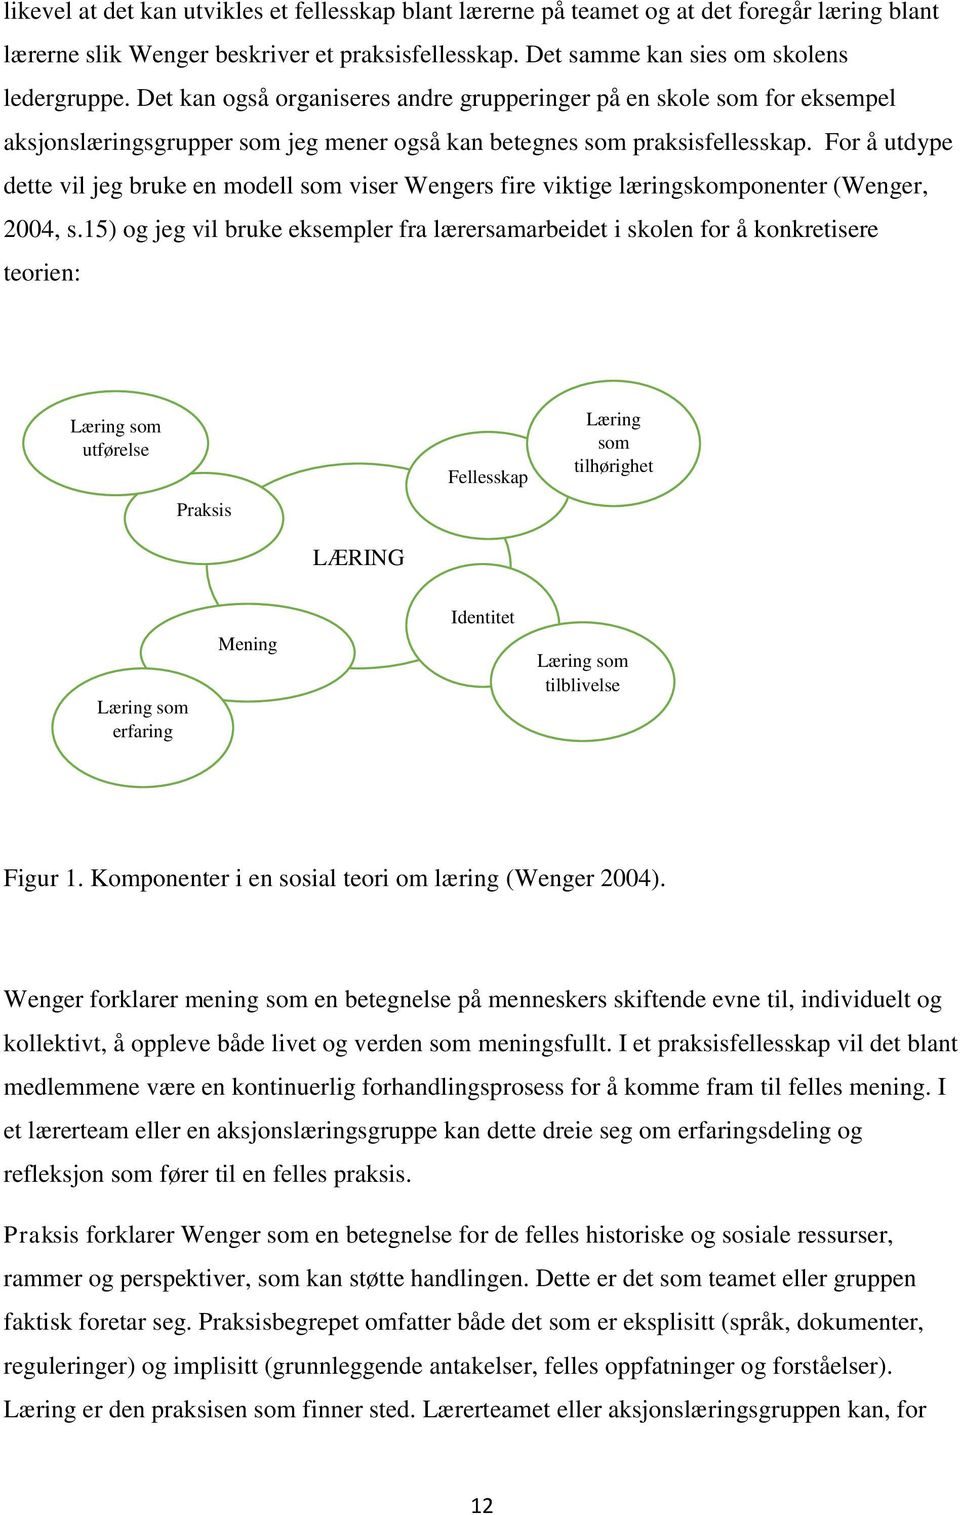 For å utdype dette vil jeg bruke en modell som viser Wengers fire viktige læringskomponenter (Wenger, 2004, s.